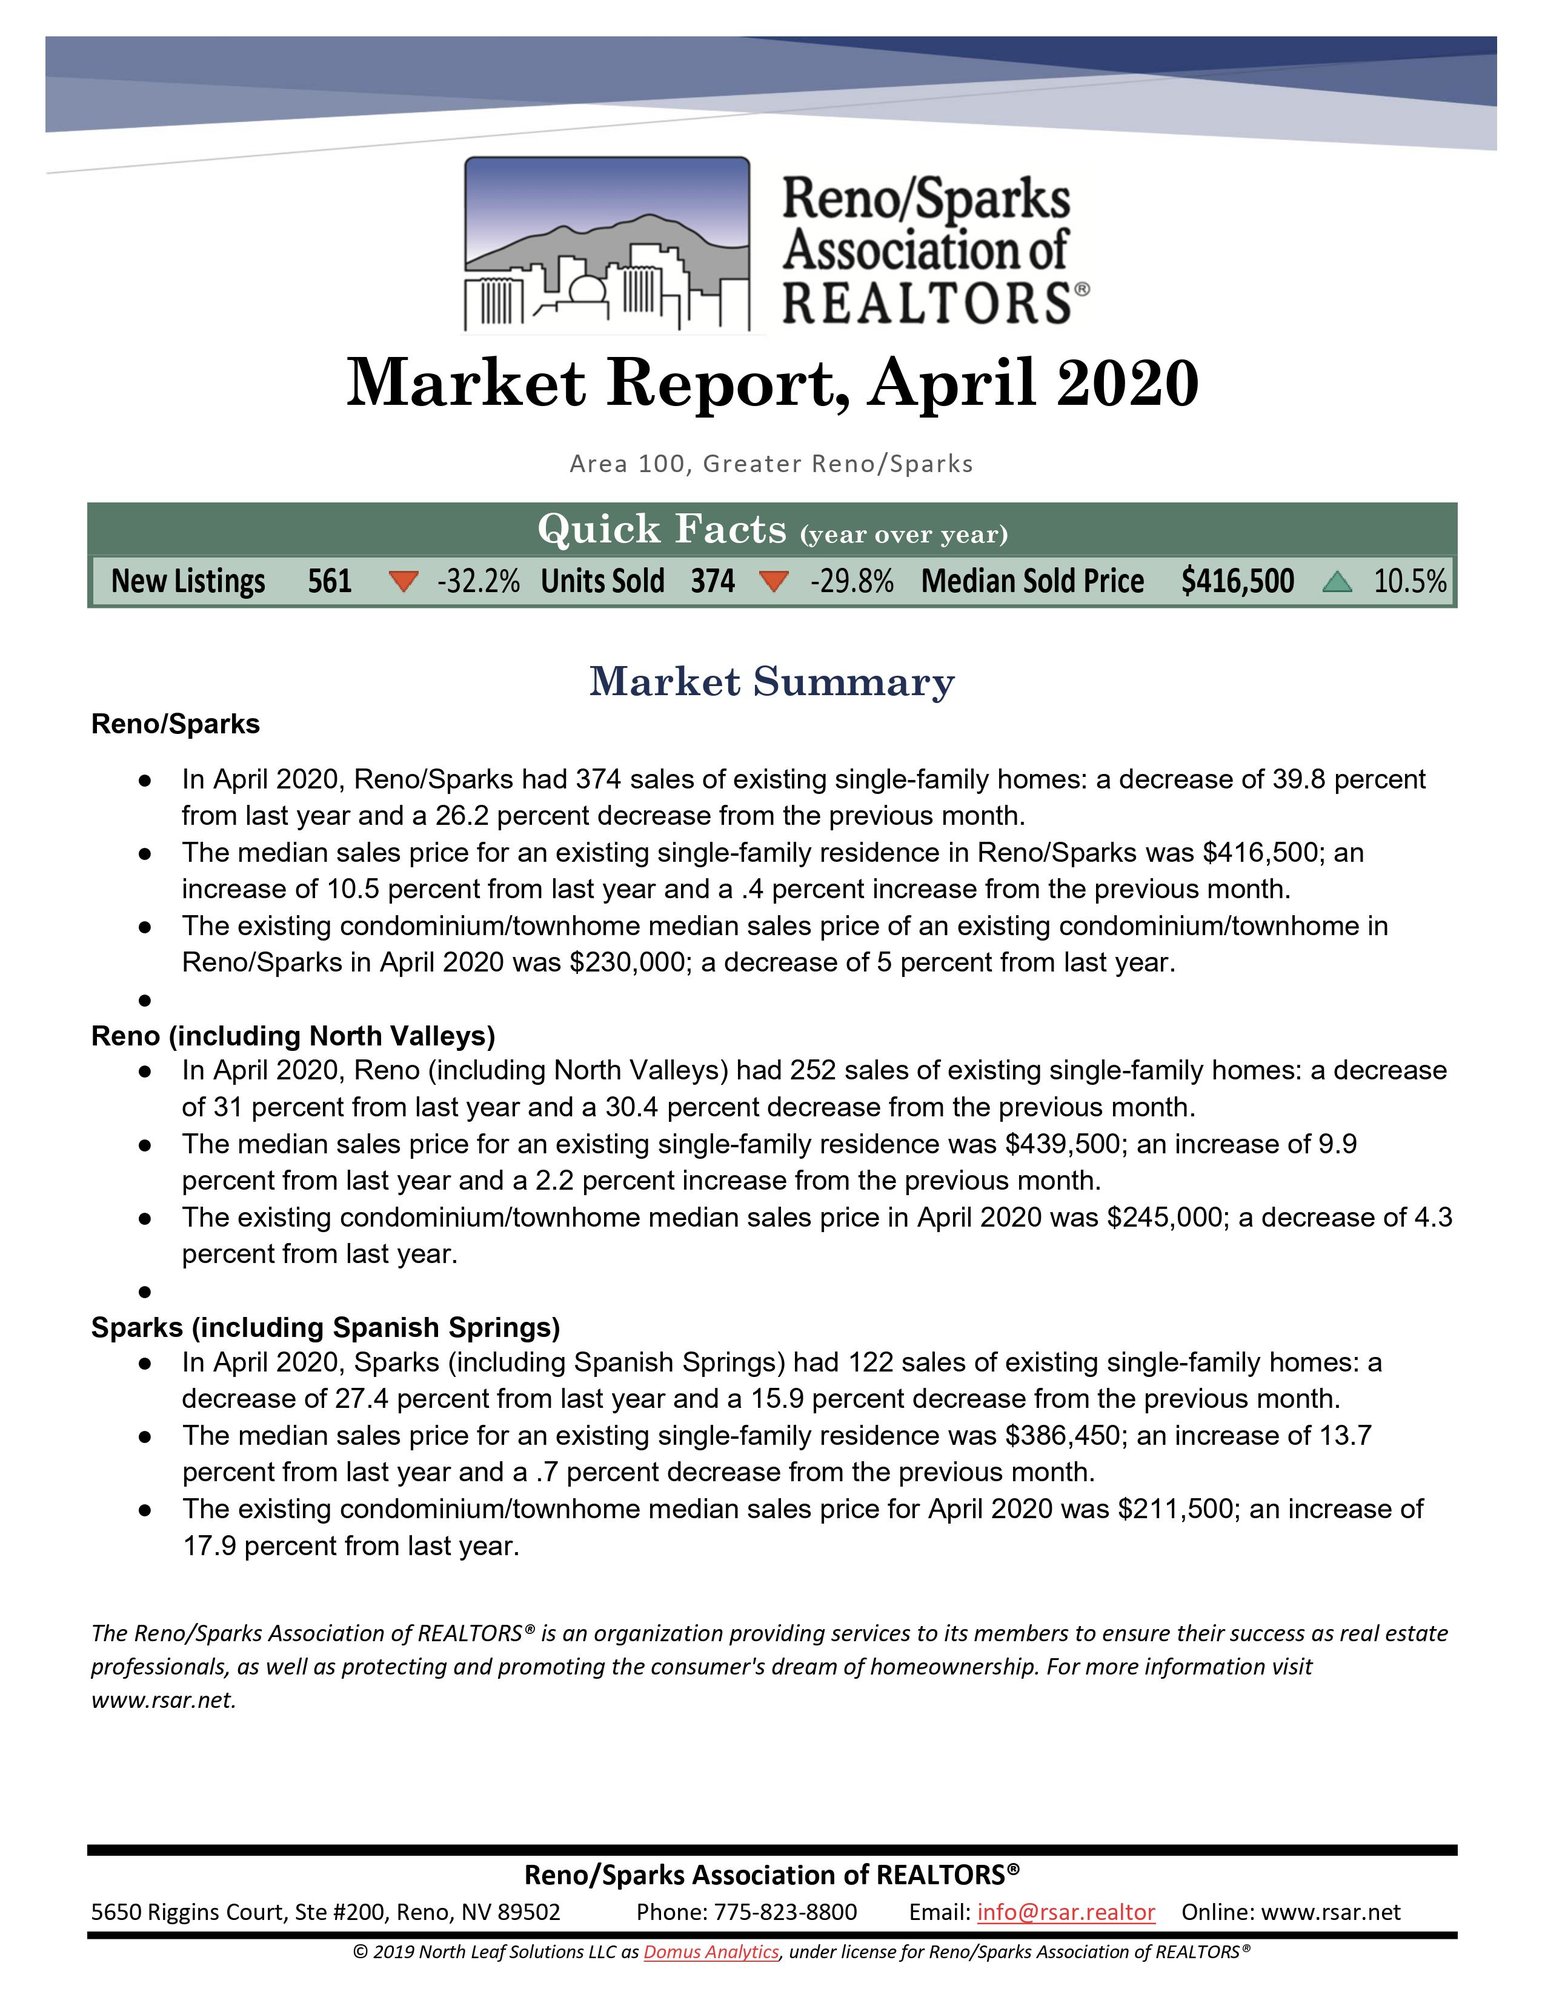 Reno Sparks Market Summary